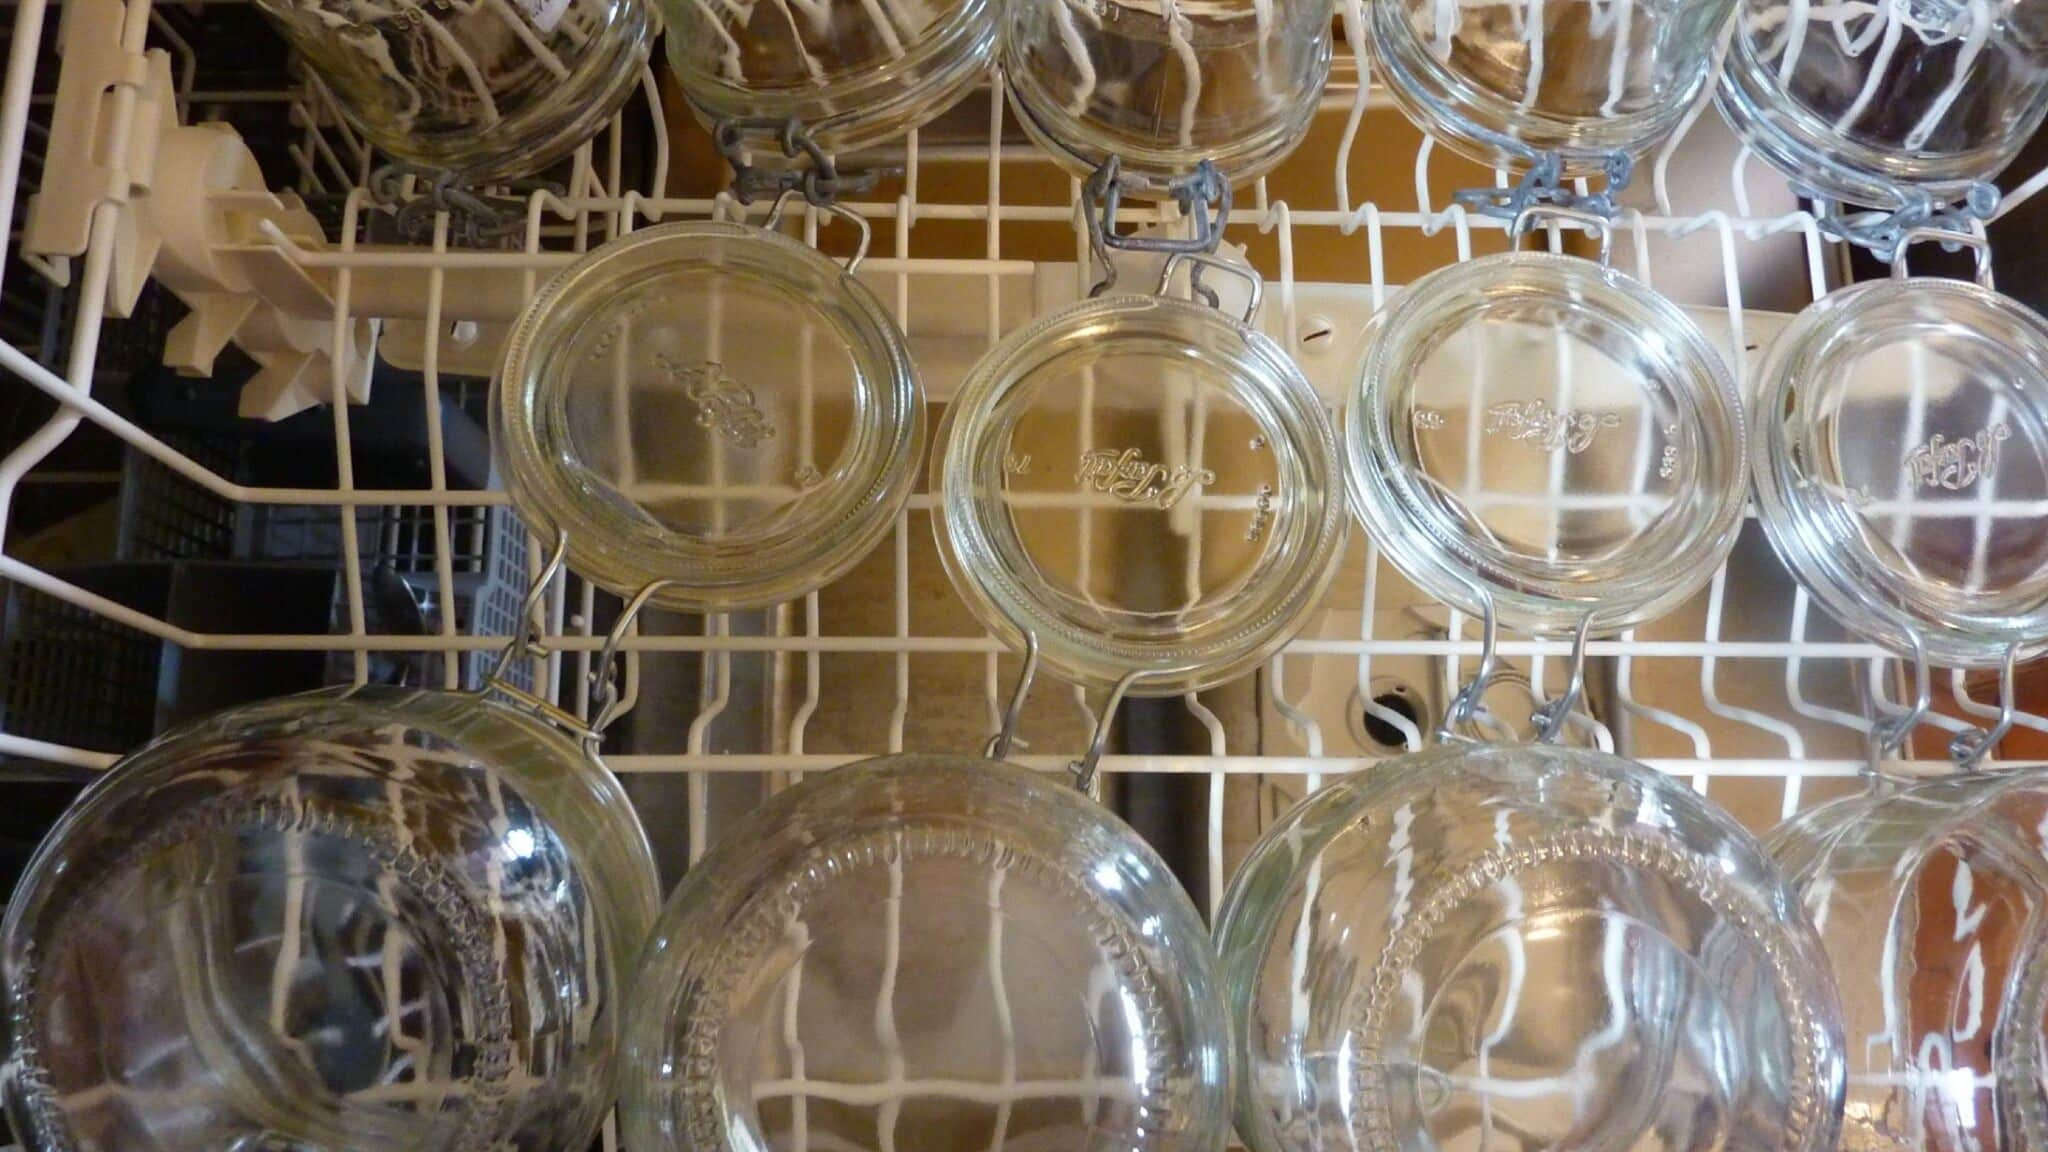 sterilizing jars in the dishwasher